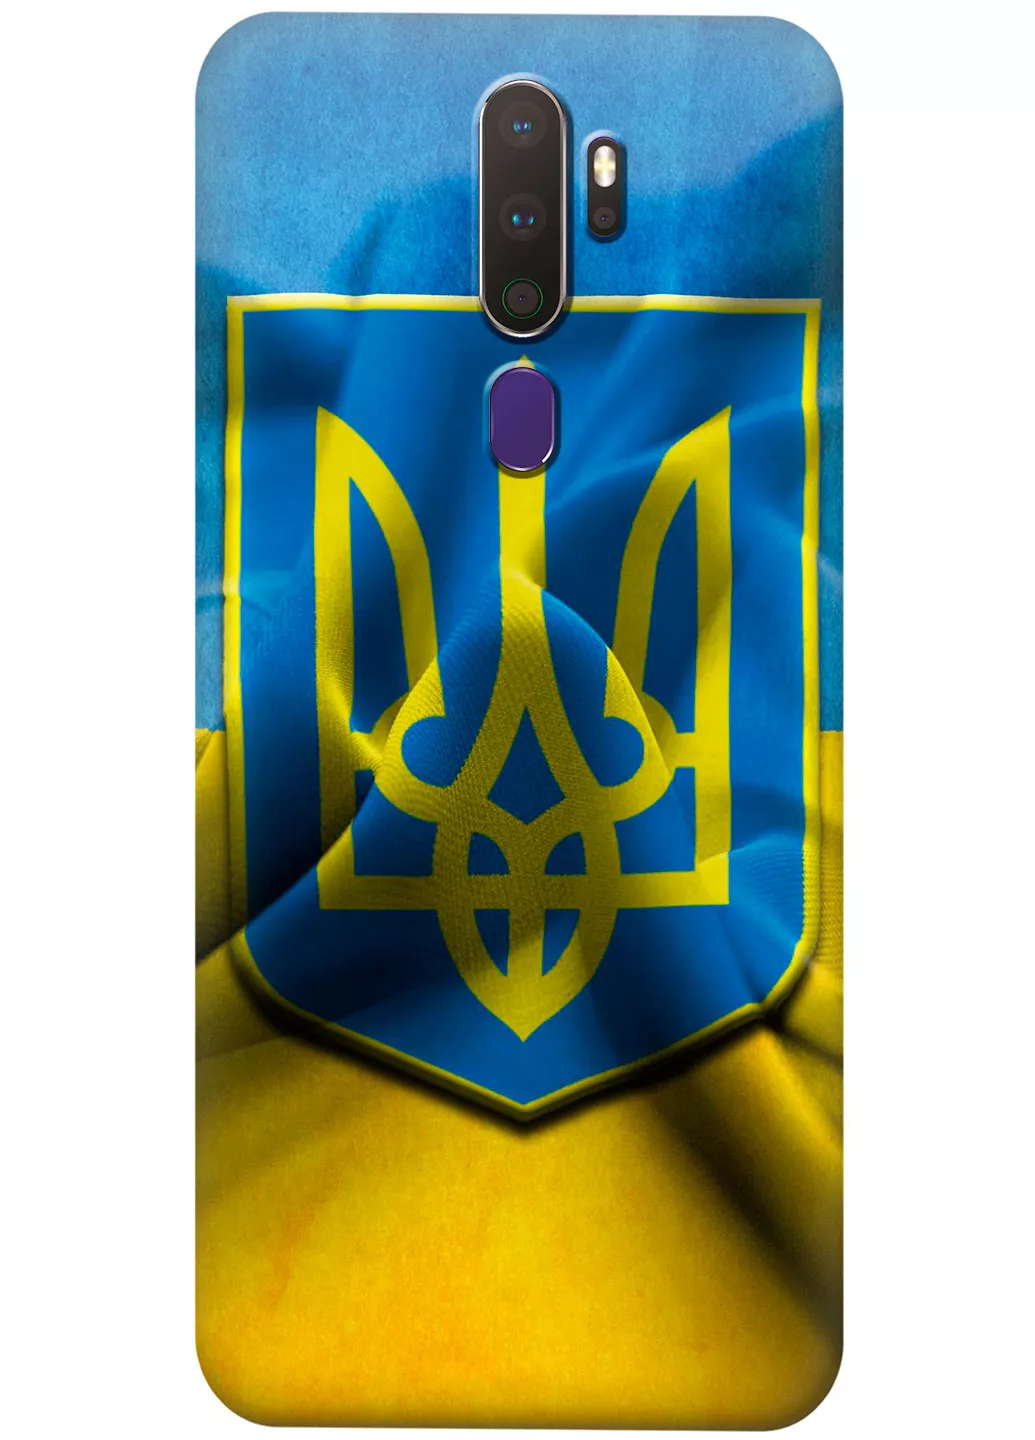 Teкно Камон 17 чехол с печатью флага и герба Украины